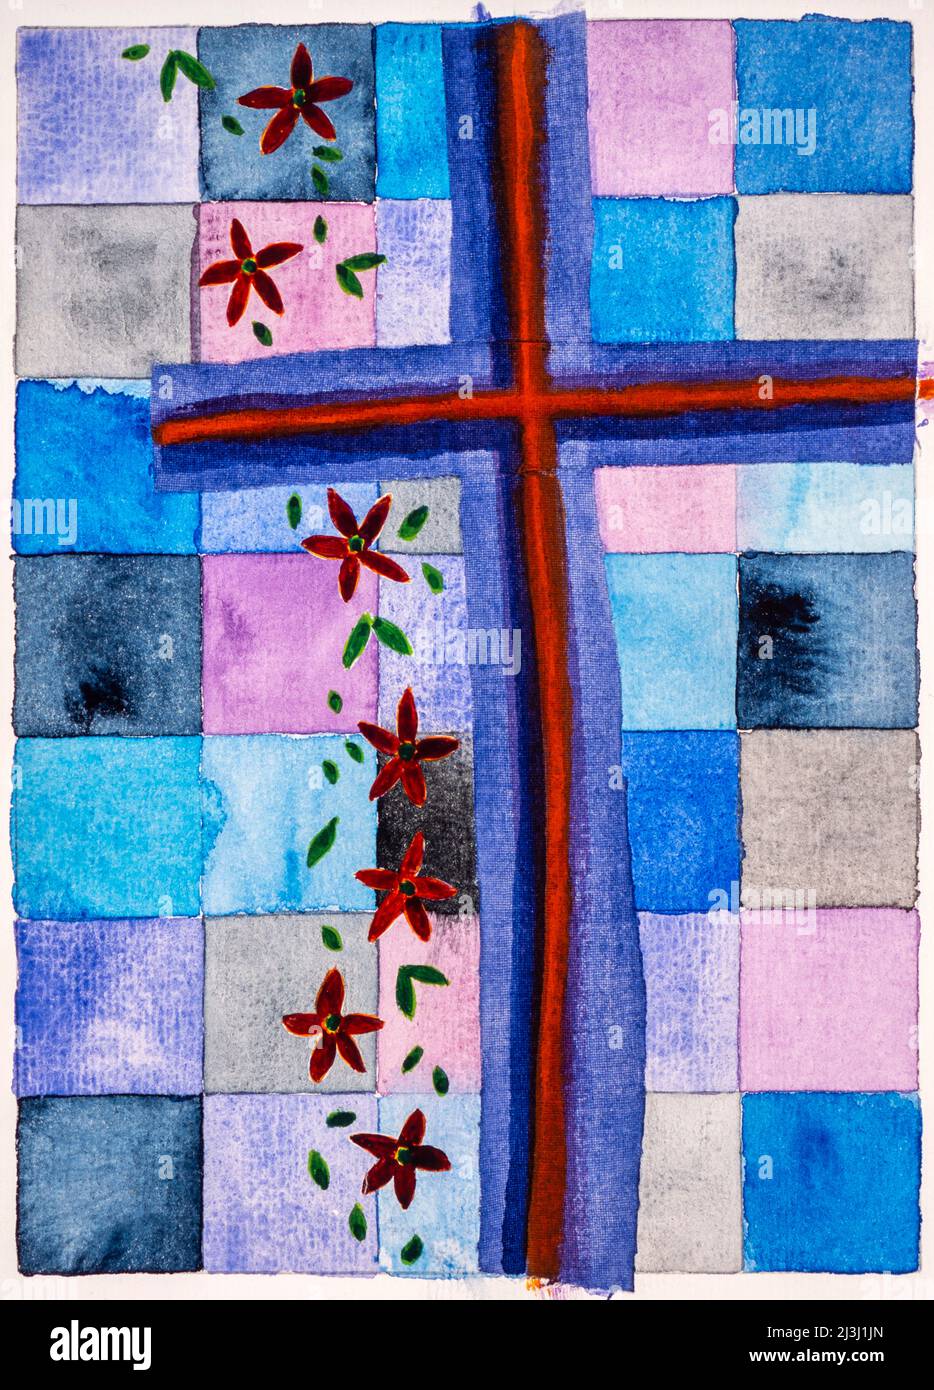 Aquarell von Heidrun Füssenhäuser Blau-Rot dunkles Kreuz, Hintergrund heller. Rote Blumen und grüne Blätter fallen und deuten auf die Vergänglichkeit des Lebens hin. Stockfoto